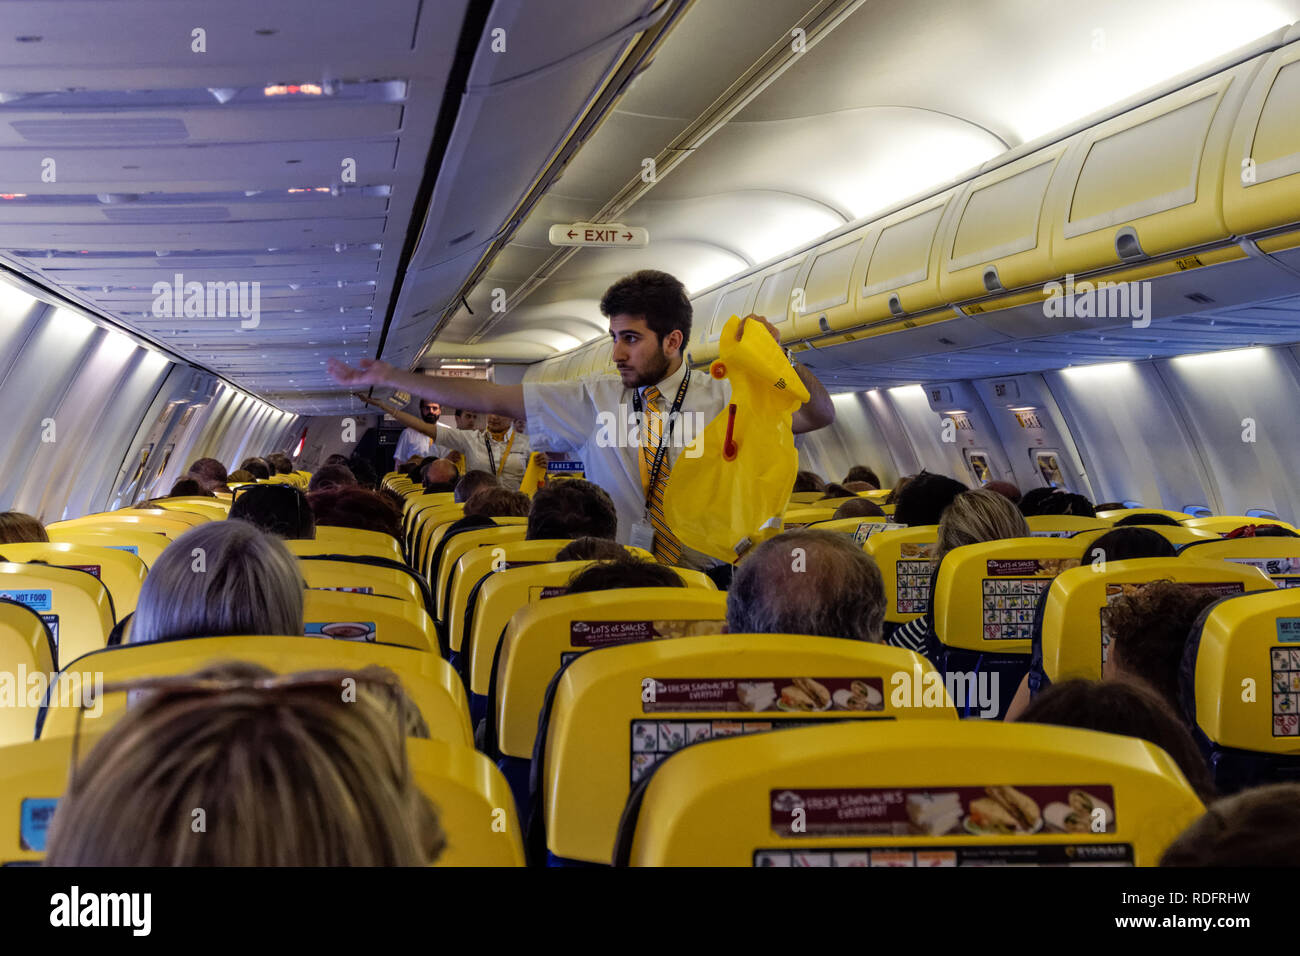 Dimostrazione di sicurezza dell'assistente di volo sull'aereo Ryanair, Regno Unito Foto Stock